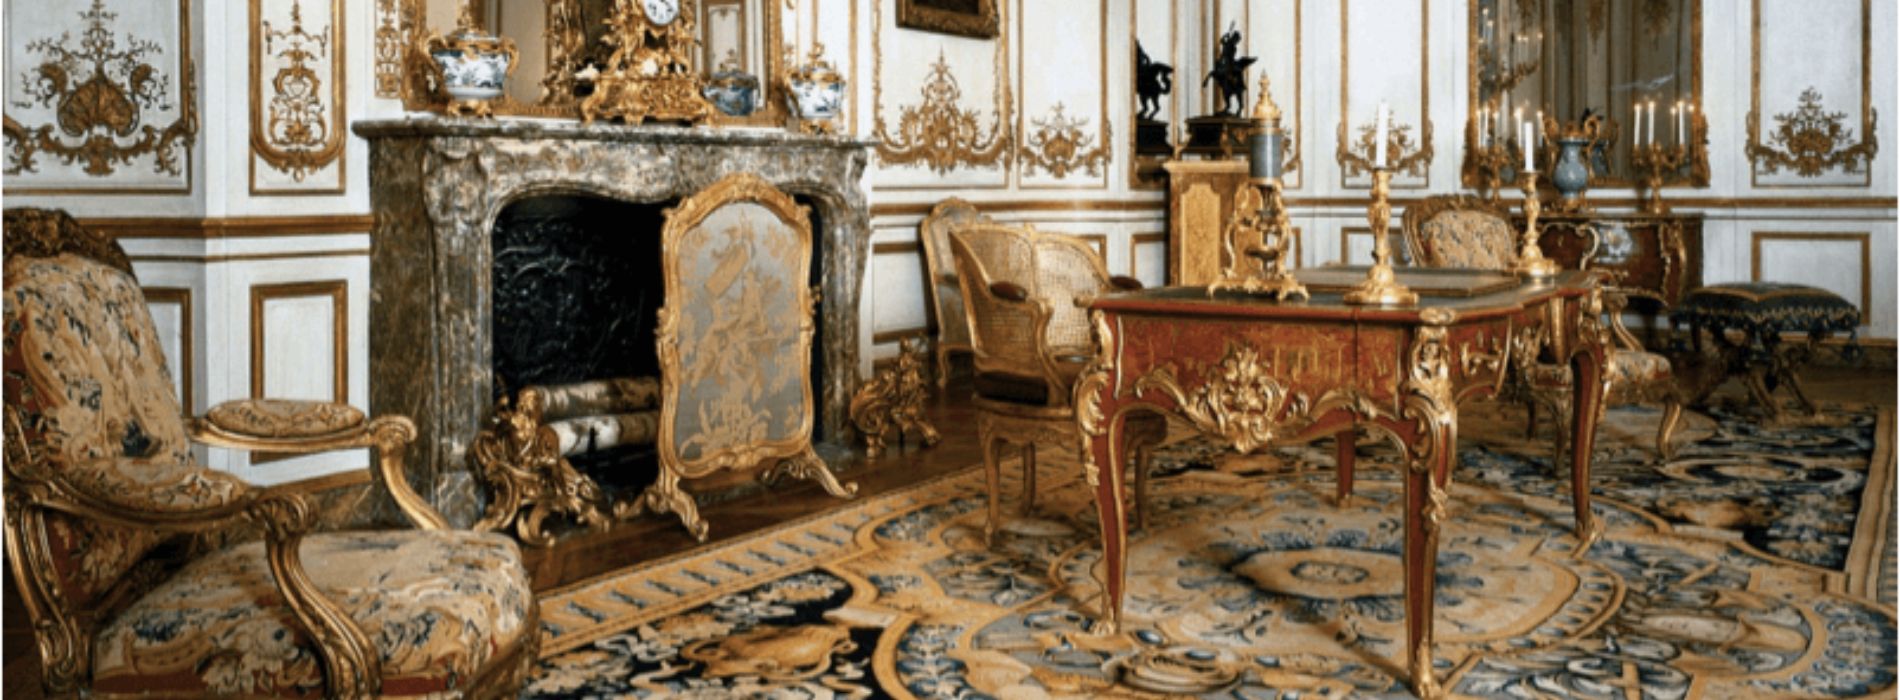 Décoration d'intérieur baroque : 6 éléments importants